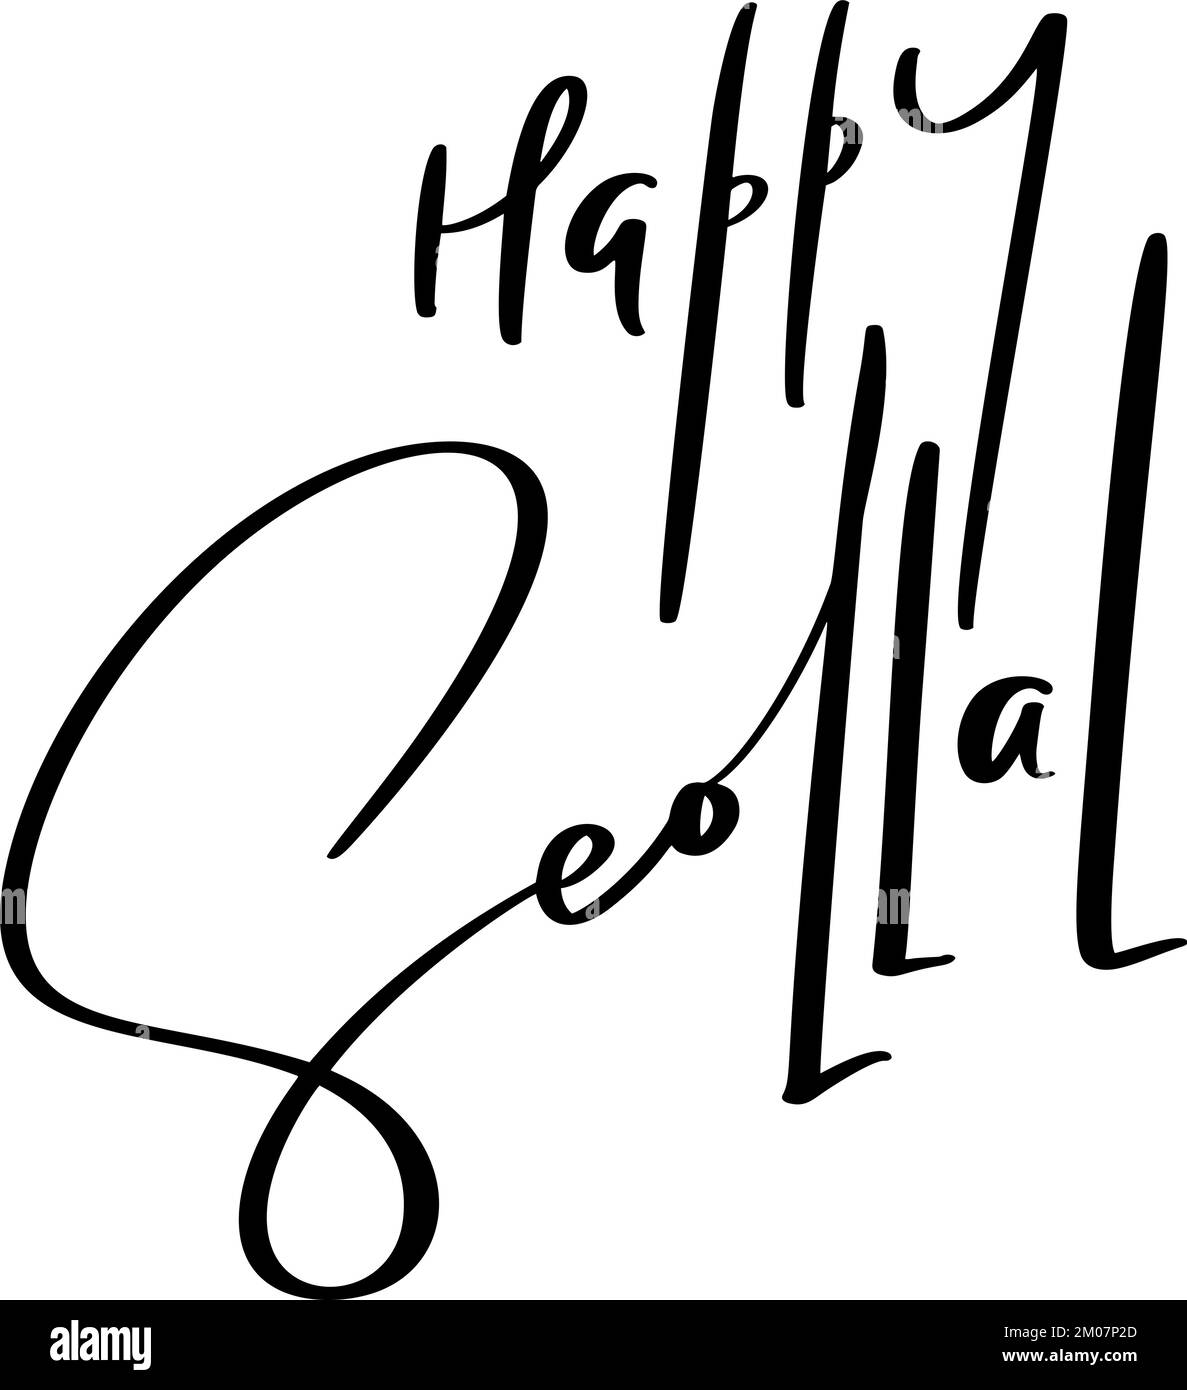 Feliz texto de caligrafía vectorial escrita a mano Seollal. Año nuevo lunar coreano. Letras de tinta de pincel modernas. Diseño de vacaciones, póster tipográfico de celebración Ilustración del Vector